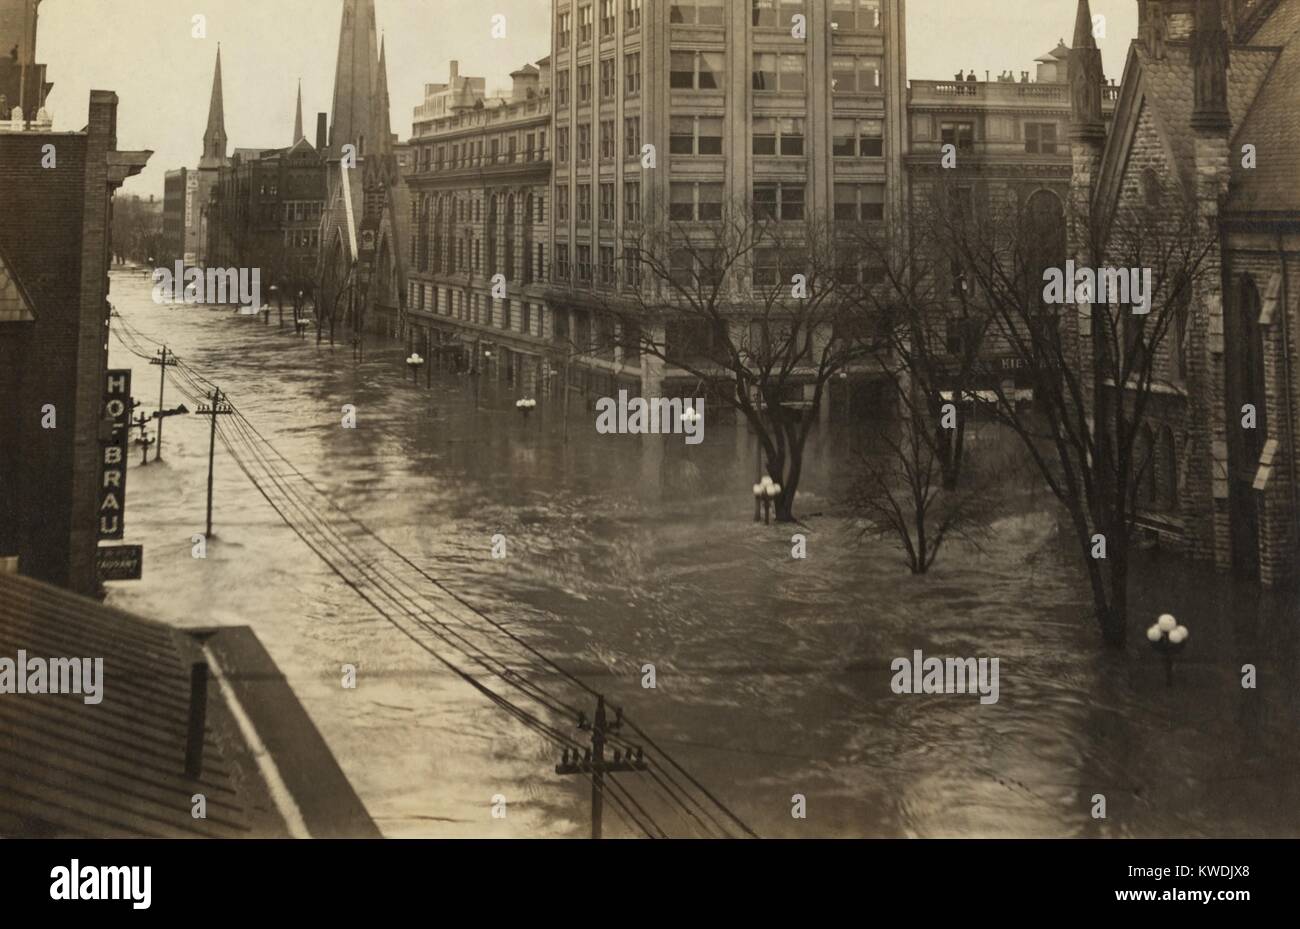 Ludlow Street, en el centro de la ciudad de Dayton, Ohio, mirando al norte durante la gran inundación de 1913. Dayton fue totalmente arrasada, siendo inundado durante tres días a finales de marzo fue Ohios mayores desastres climáticos de comienzos del siglo XX (BSLOC 2017 17 96) Foto de stock